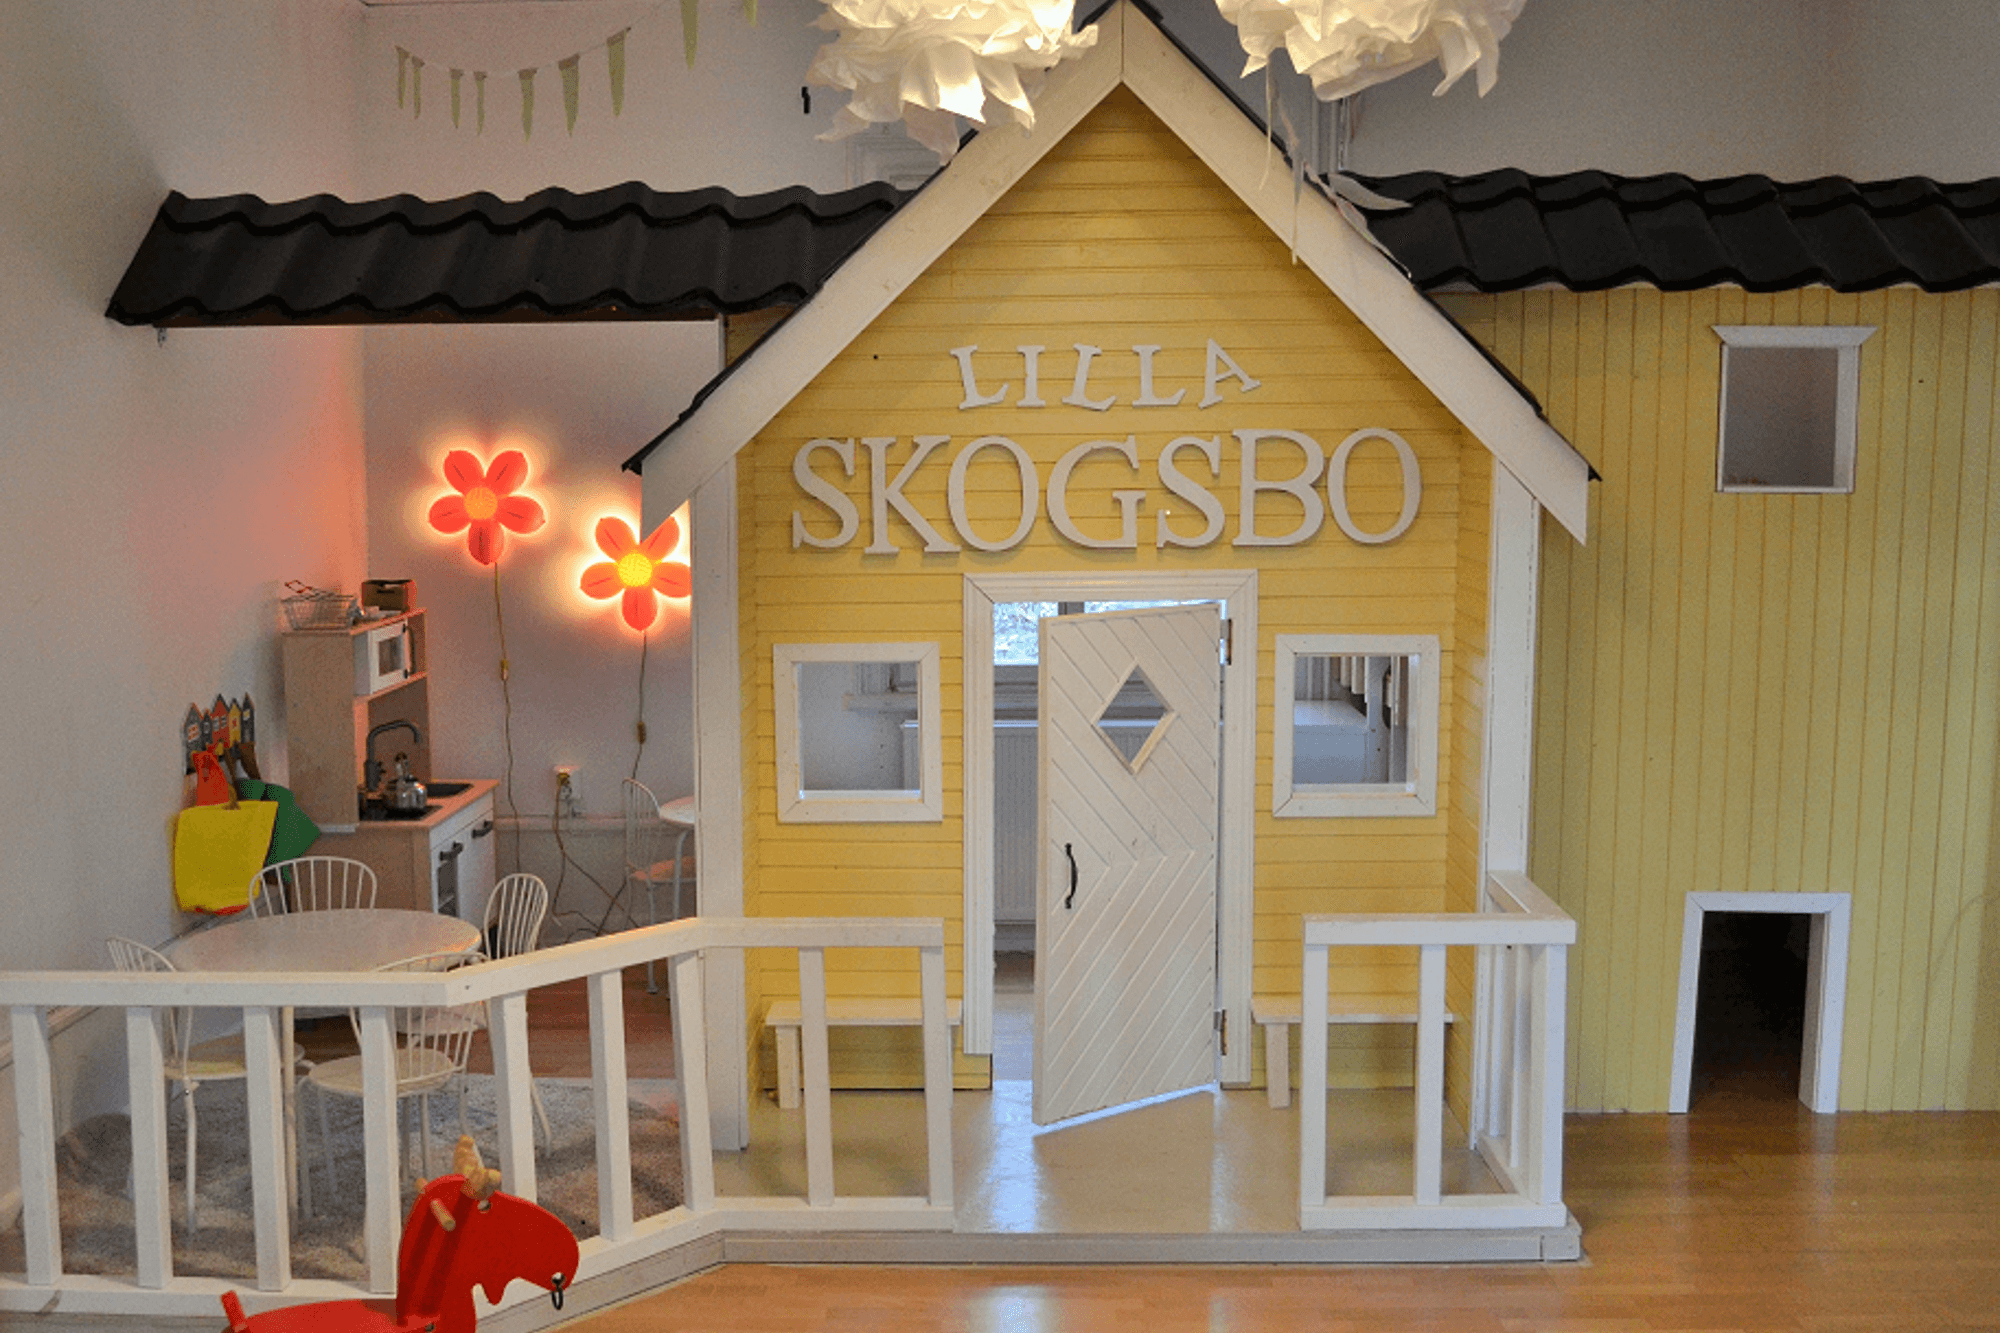 Ett lekrum inne i skyddade boendet Skogsbo med en lekstuga som har namnet "Lilla Skogsbo".